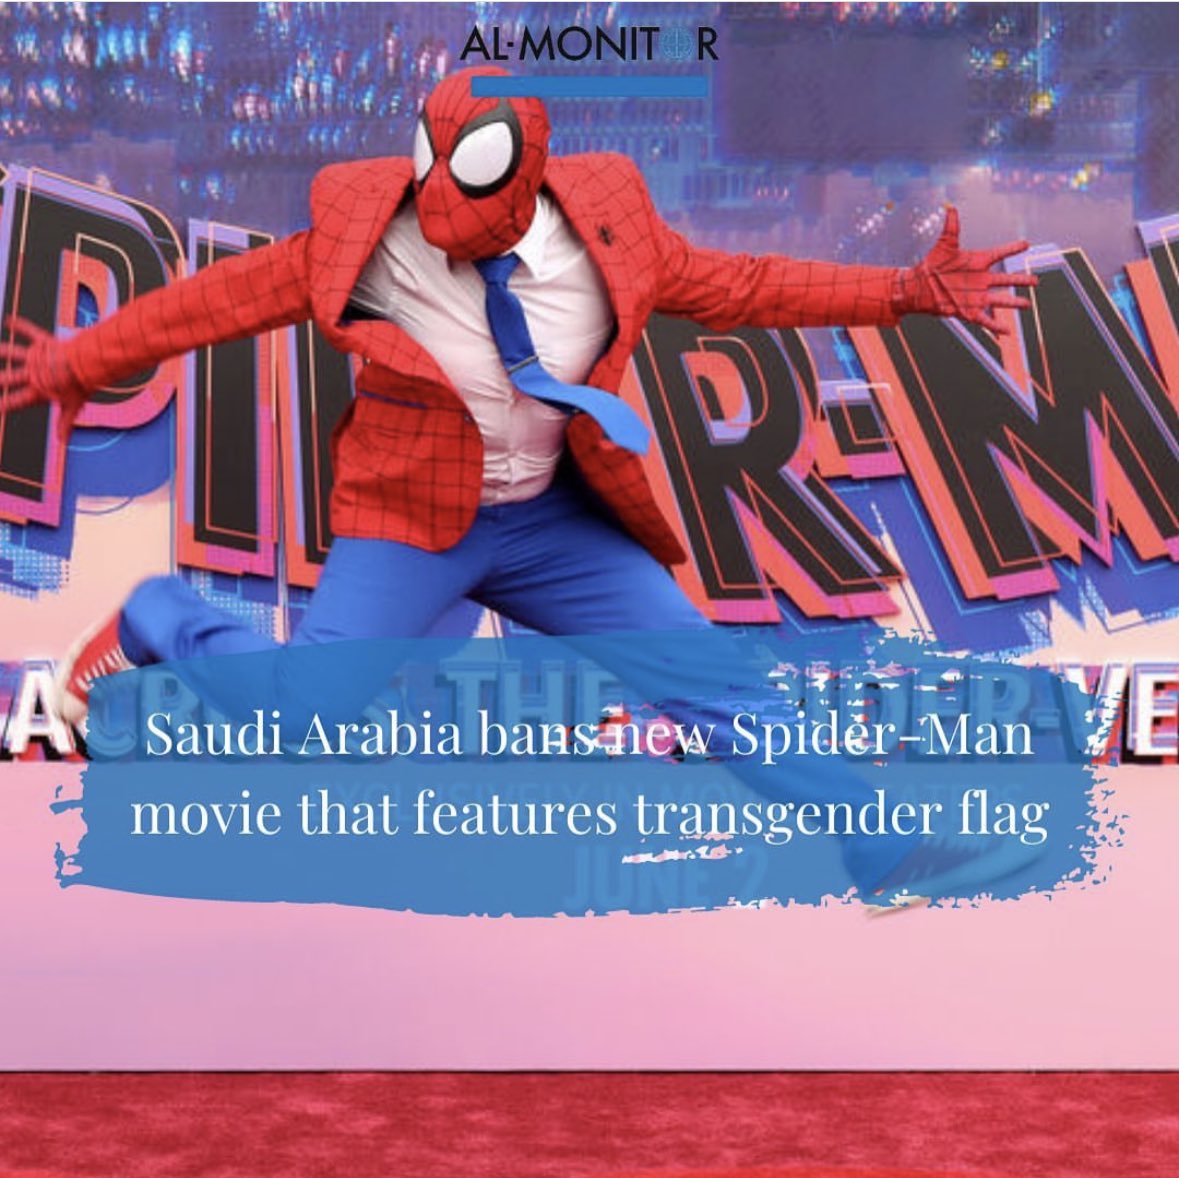 Spider Man serisinin son filmi “Across the Spider Verse” (Örümcek-Evrenine Geçiş) LGBT içeriği dolayısıyla Suudi Arabistan’da yasaklandı.